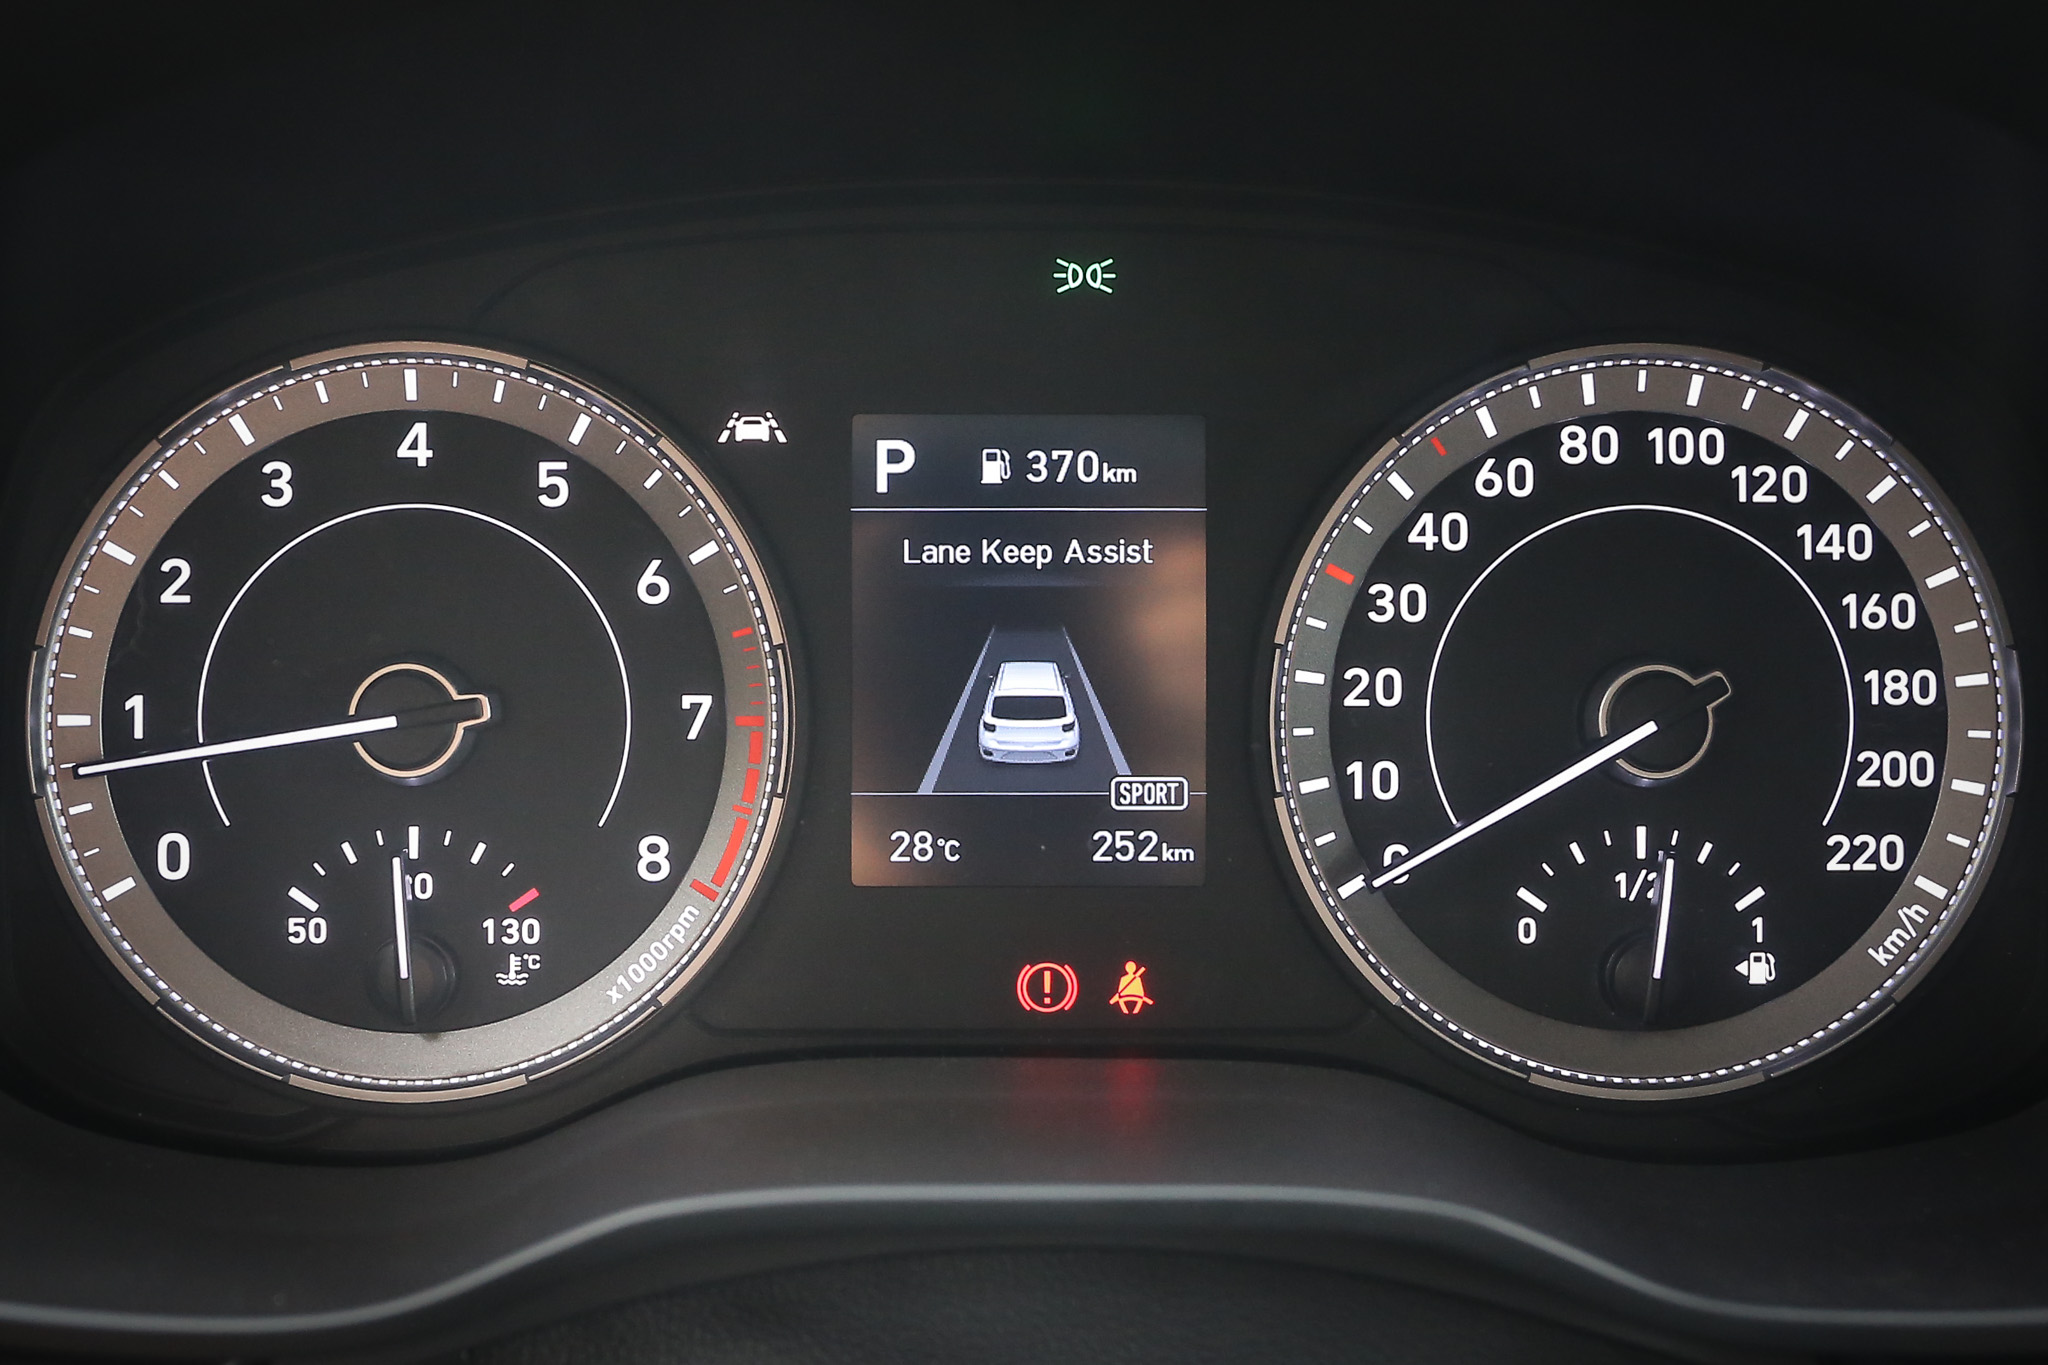 雙環儀表中央採用 3.5 吋 TFT-LCD 車資顯示幕。